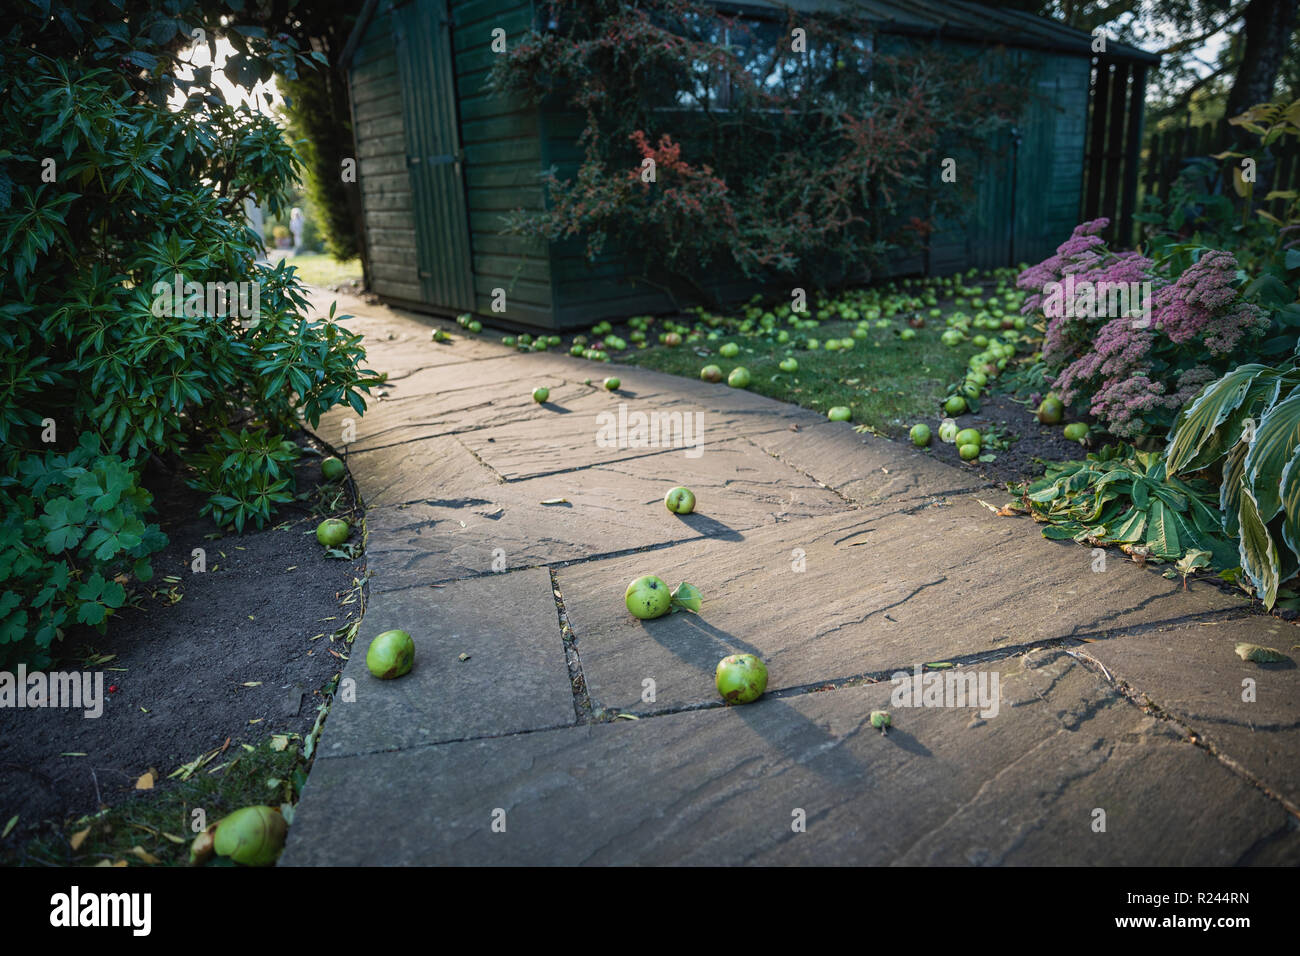 Un basso-down shot in prospettiva di un giardino curvo sentiero, caduti mele verdi può essere visto sparsi intorno alla terra. Foto Stock